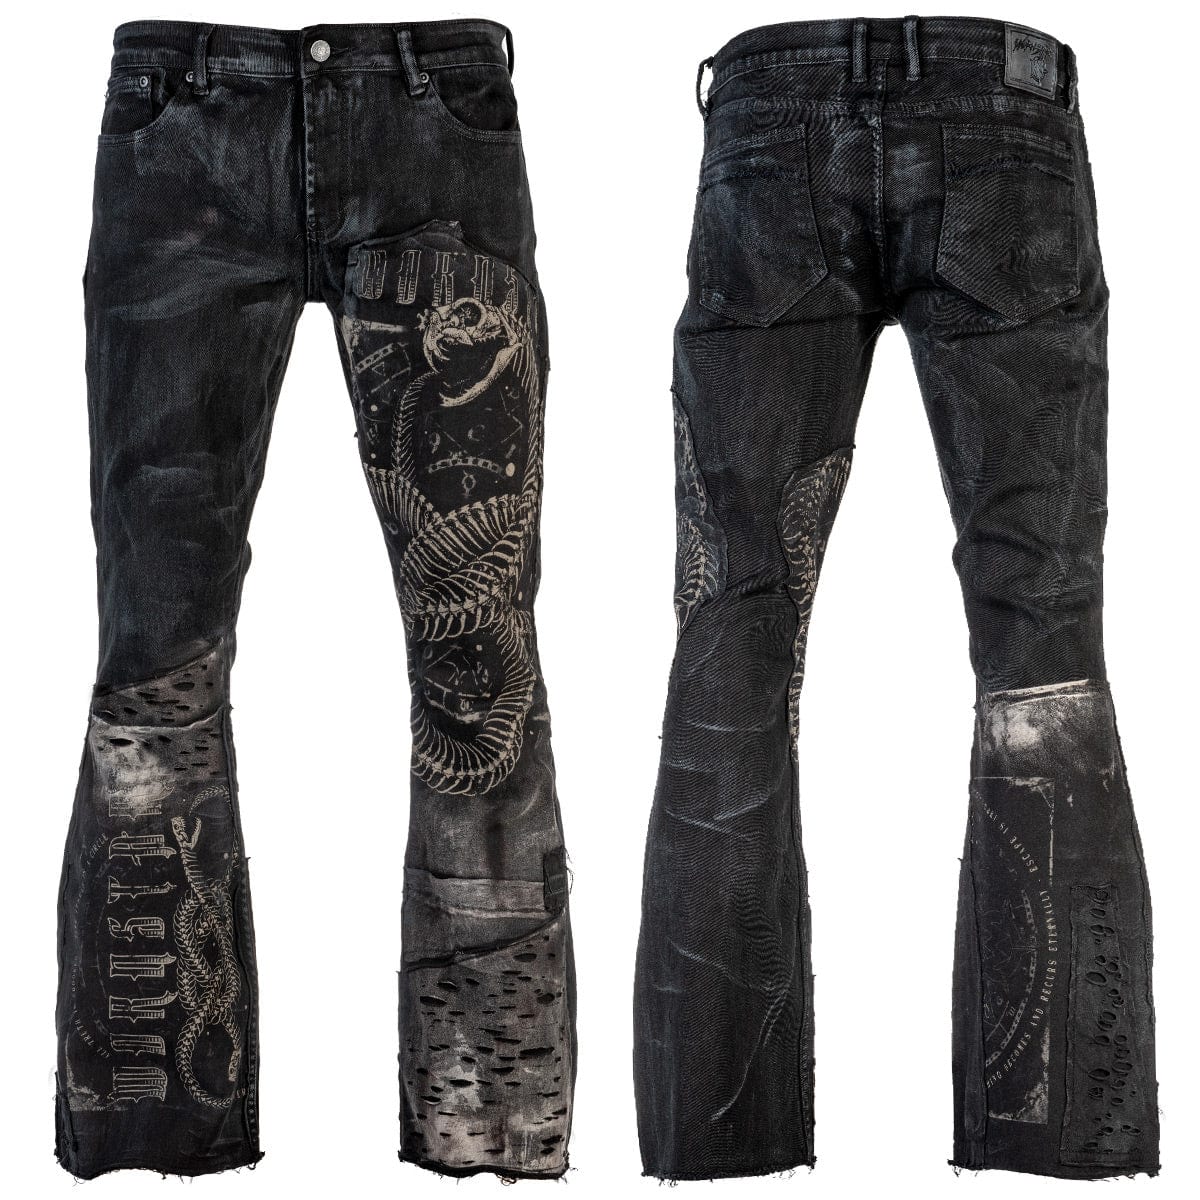 Rockstar Pants Denim - Darkstore - Order gothic fashion online or